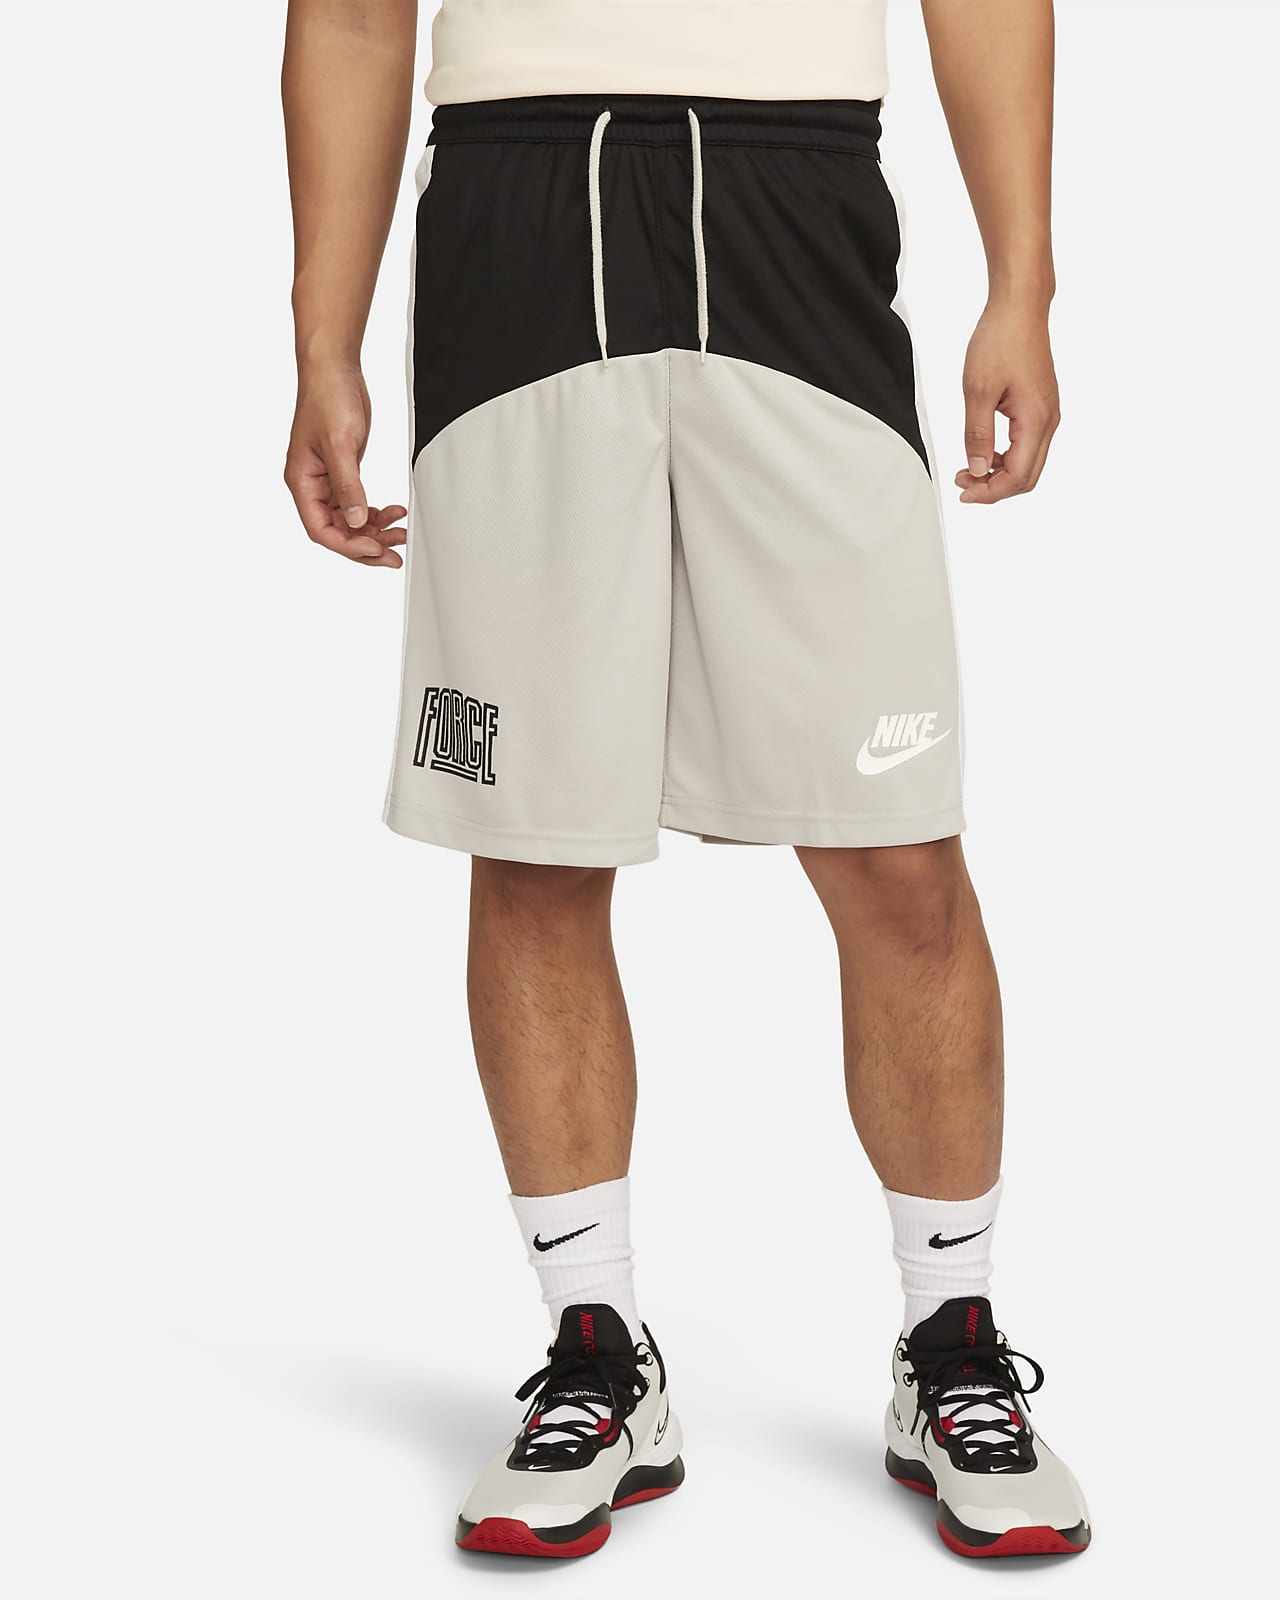 Nike Men's Shorts